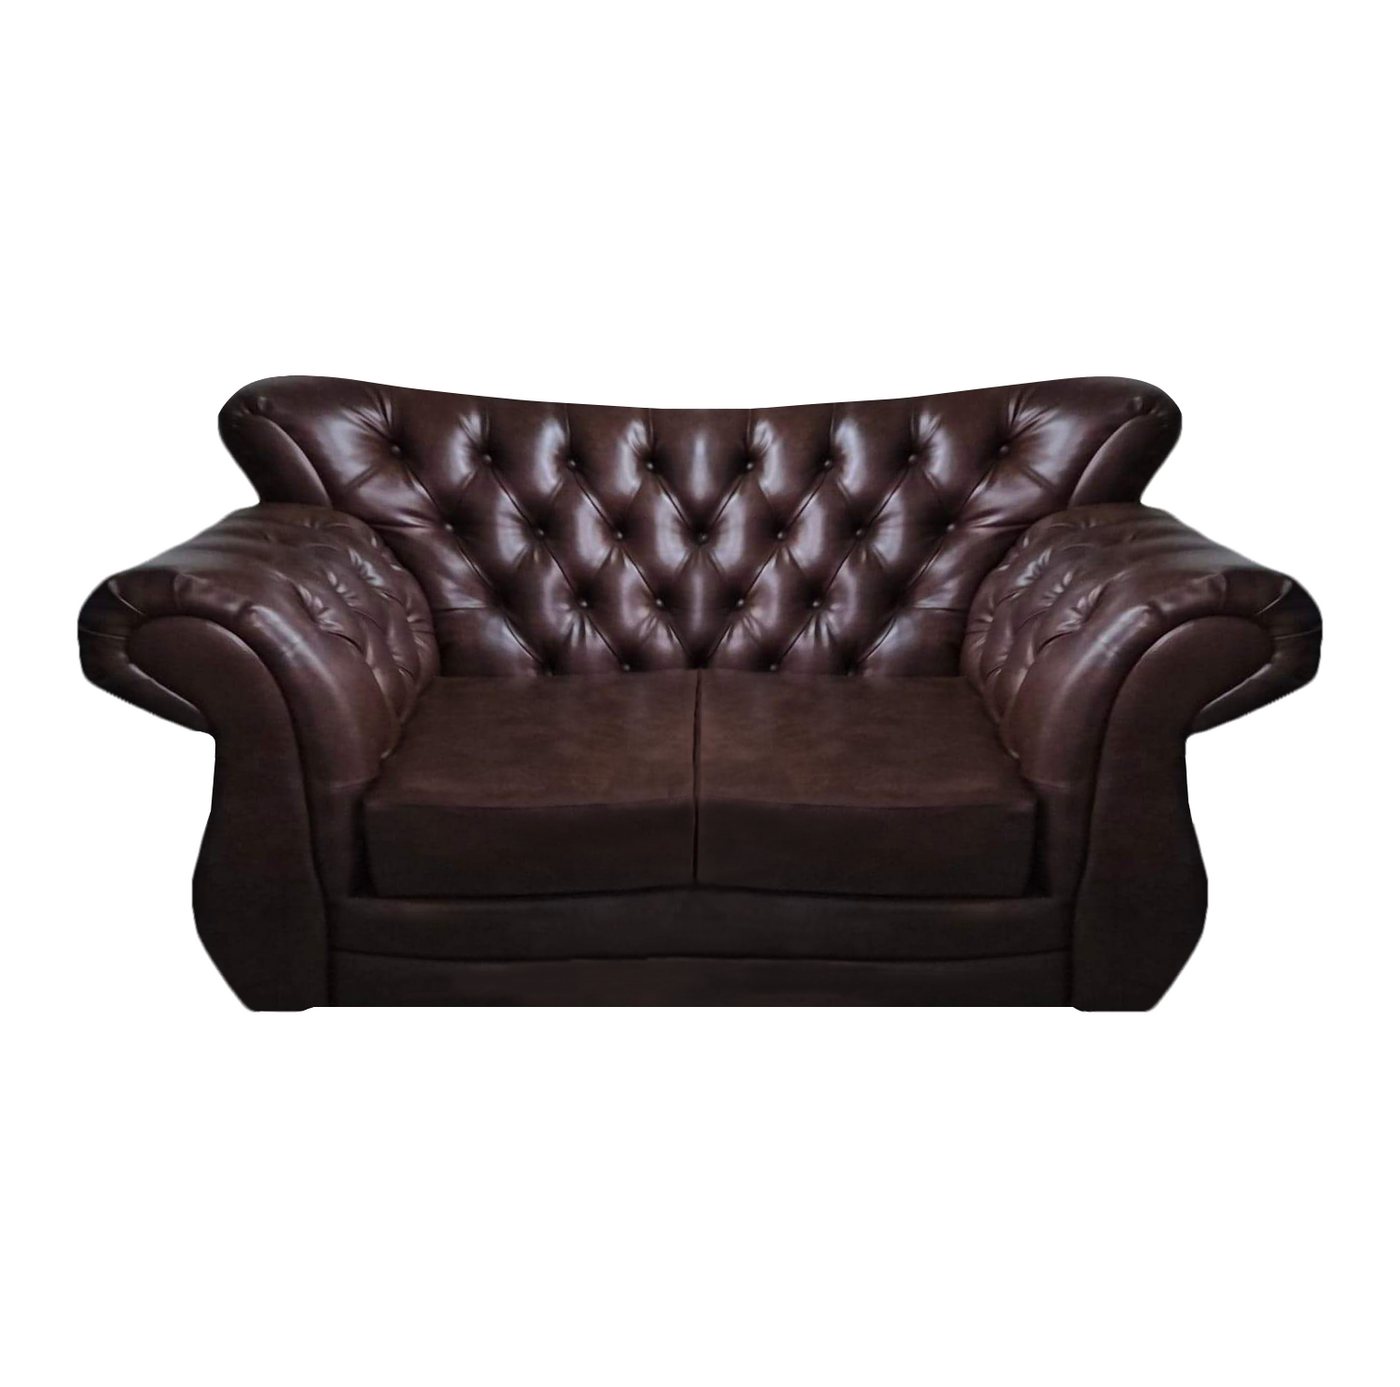 JVmoebel Chesterfield-Sofa Chesterfield Luxus Sofa Couch Zweisitzer Braun Leder Sofas Wohnzimmer, 1 Teile, Made in Europa von JVmoebel